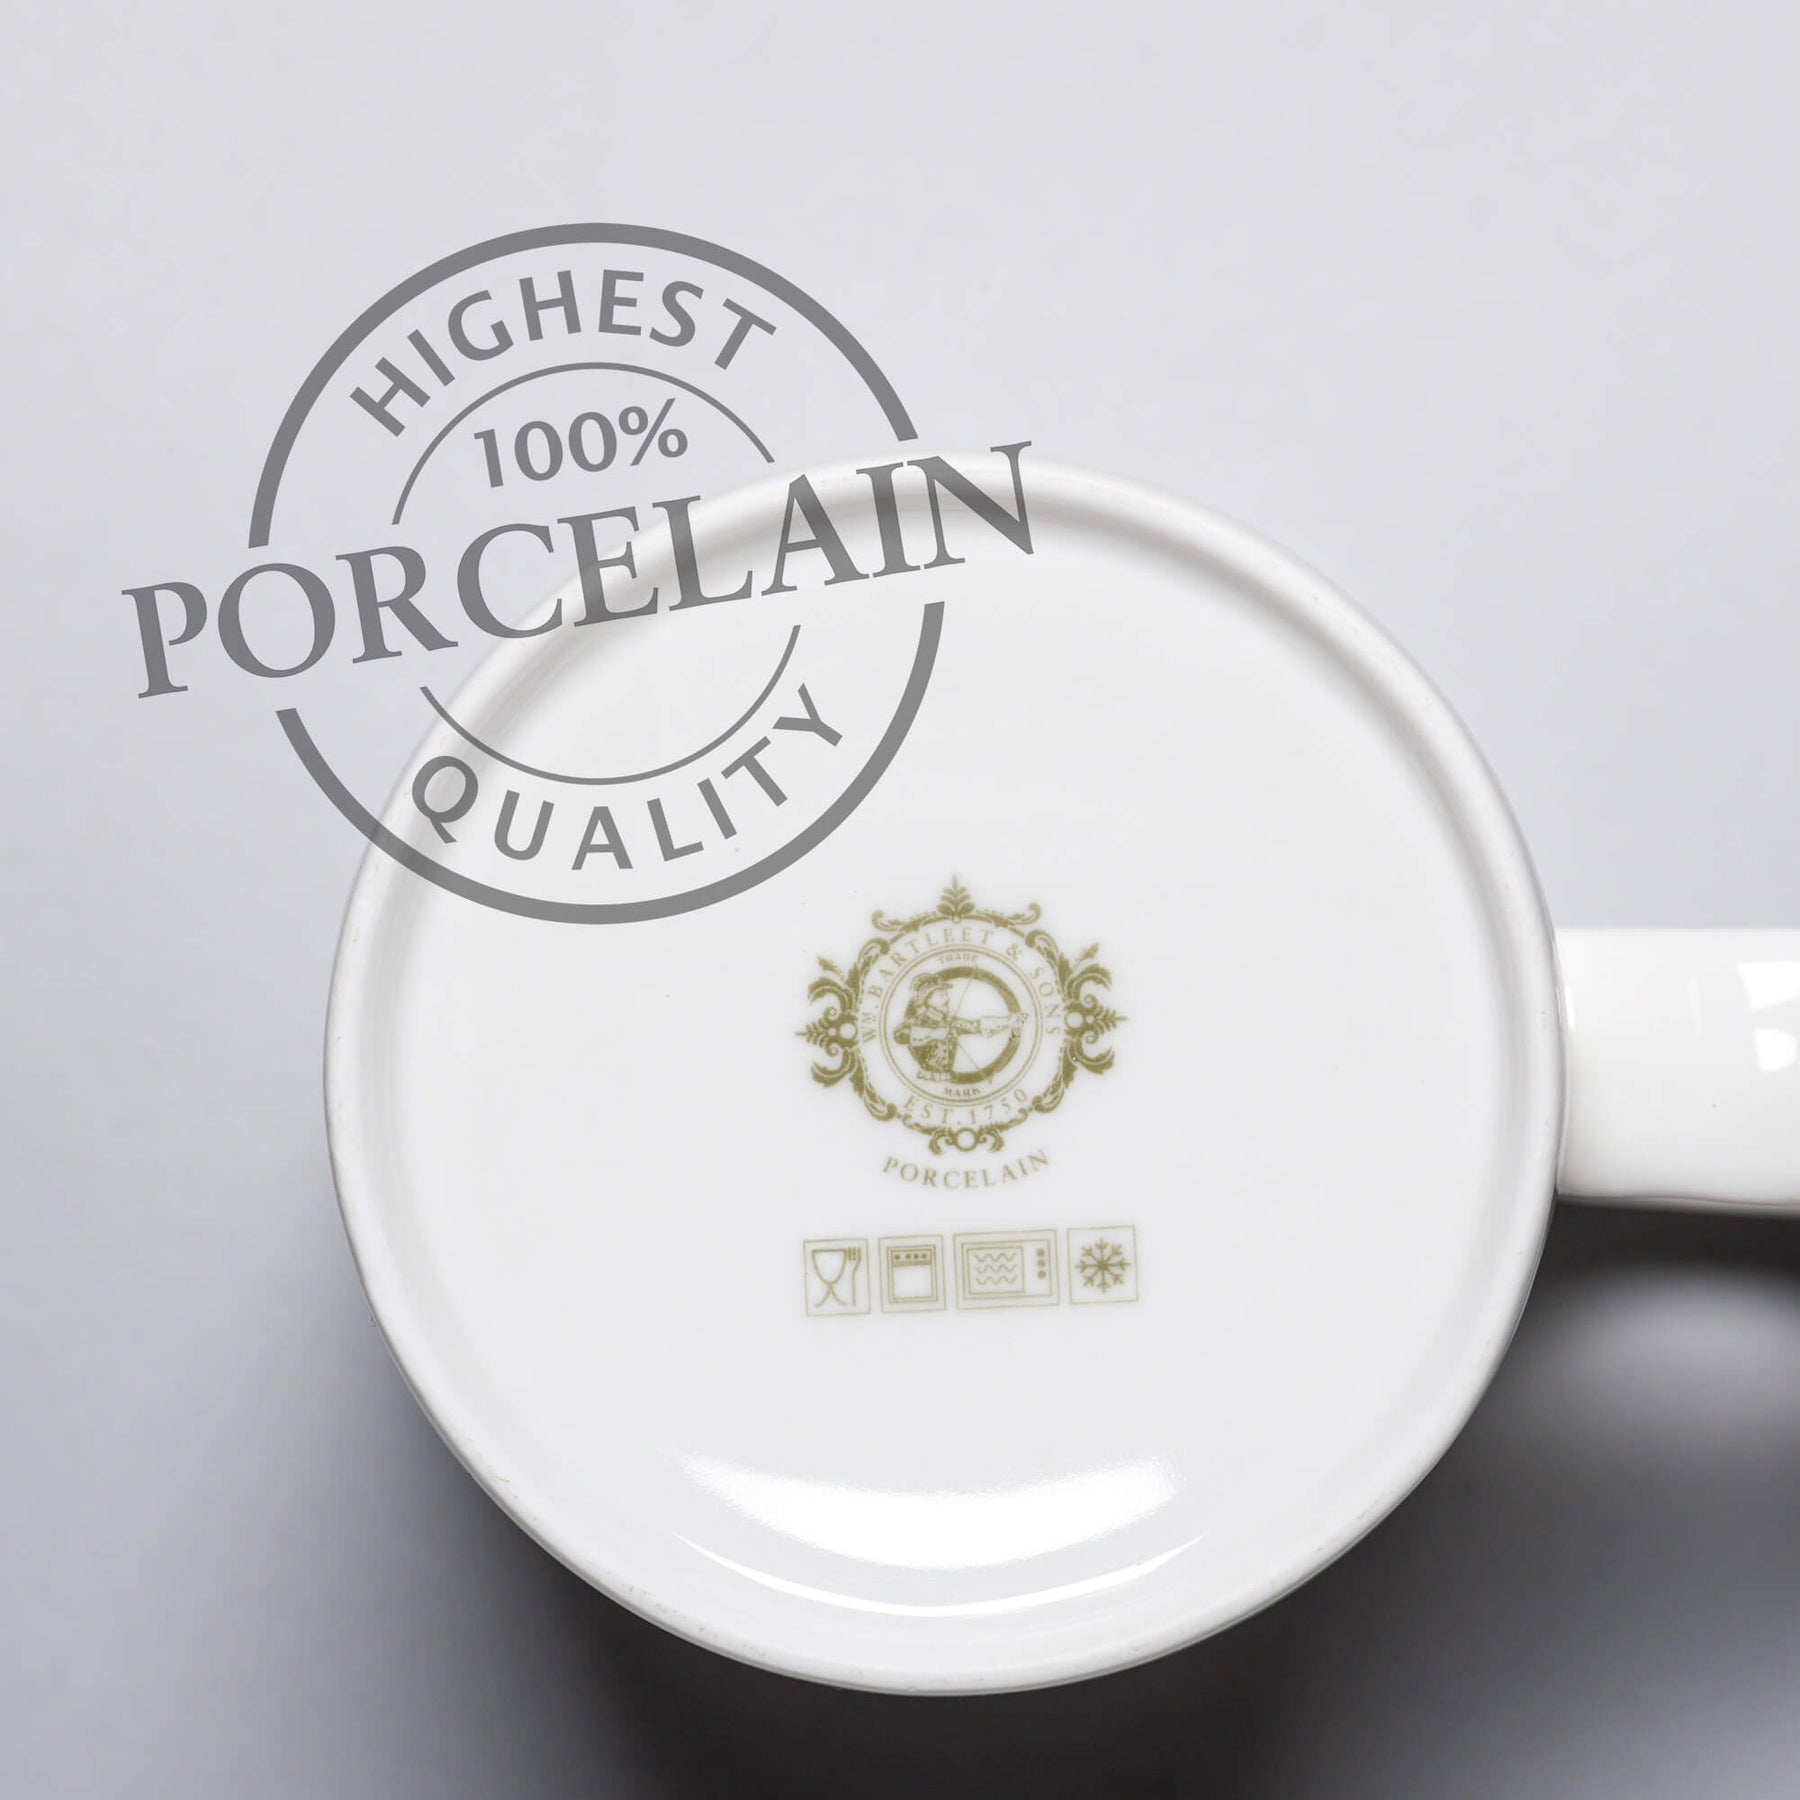 Porcelain Extra Large Original Mug, 1.2 Pint